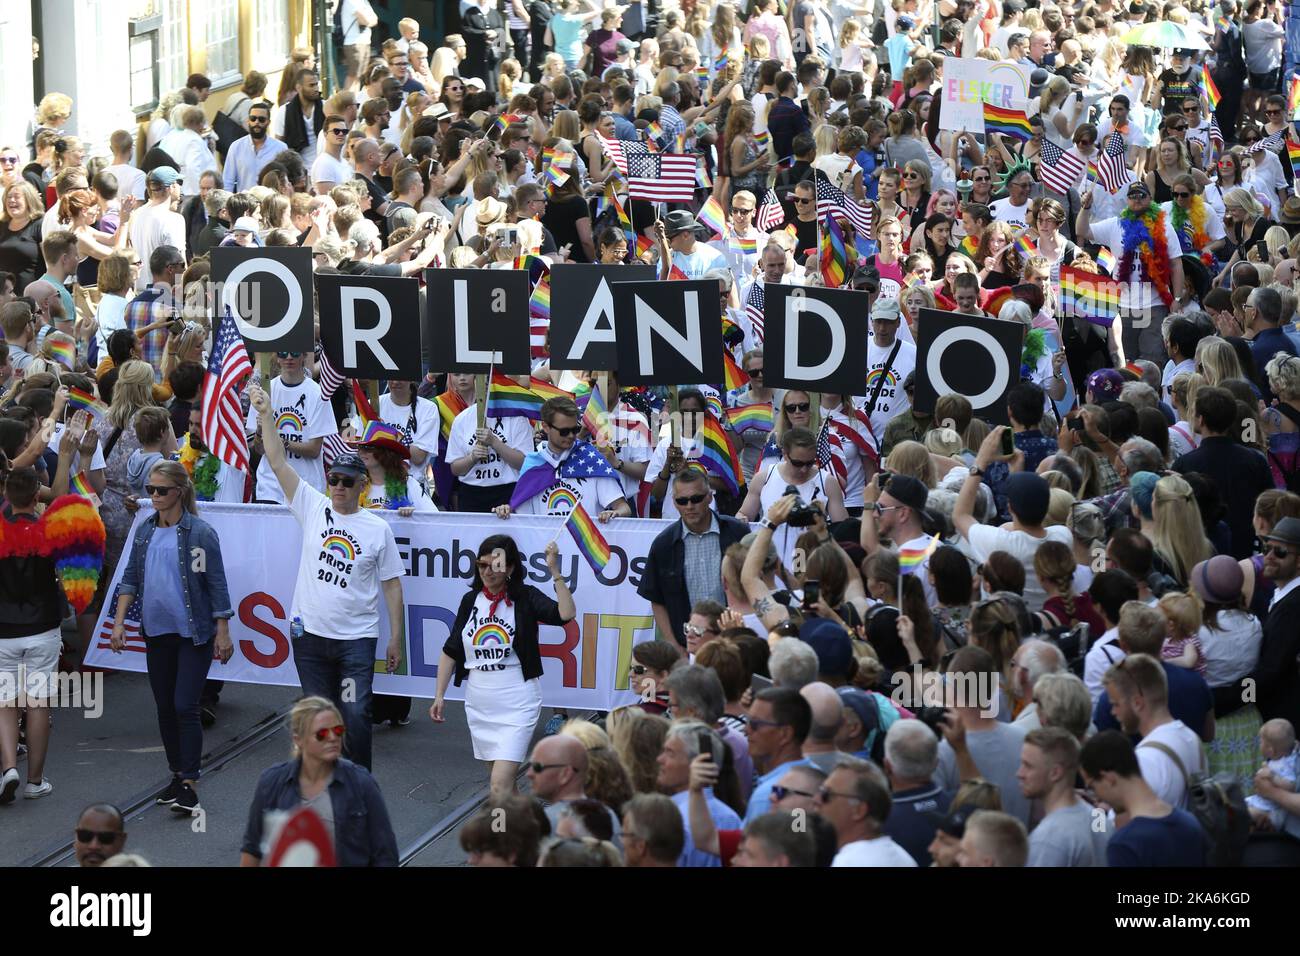 Oslo 20160625. El desfile del orgullo de Oslo se lleva a cabo junto con el festival del orgullo de Oslo. El incidente en Orlando, donde 49 personas murieron y más de 50 otras resultaron heridas en un ataque al club gay Pulse el 12 de junio fue un tema repetido durante el desfile. Foto: Vidar Ruud / NTB scanpix Foto de stock